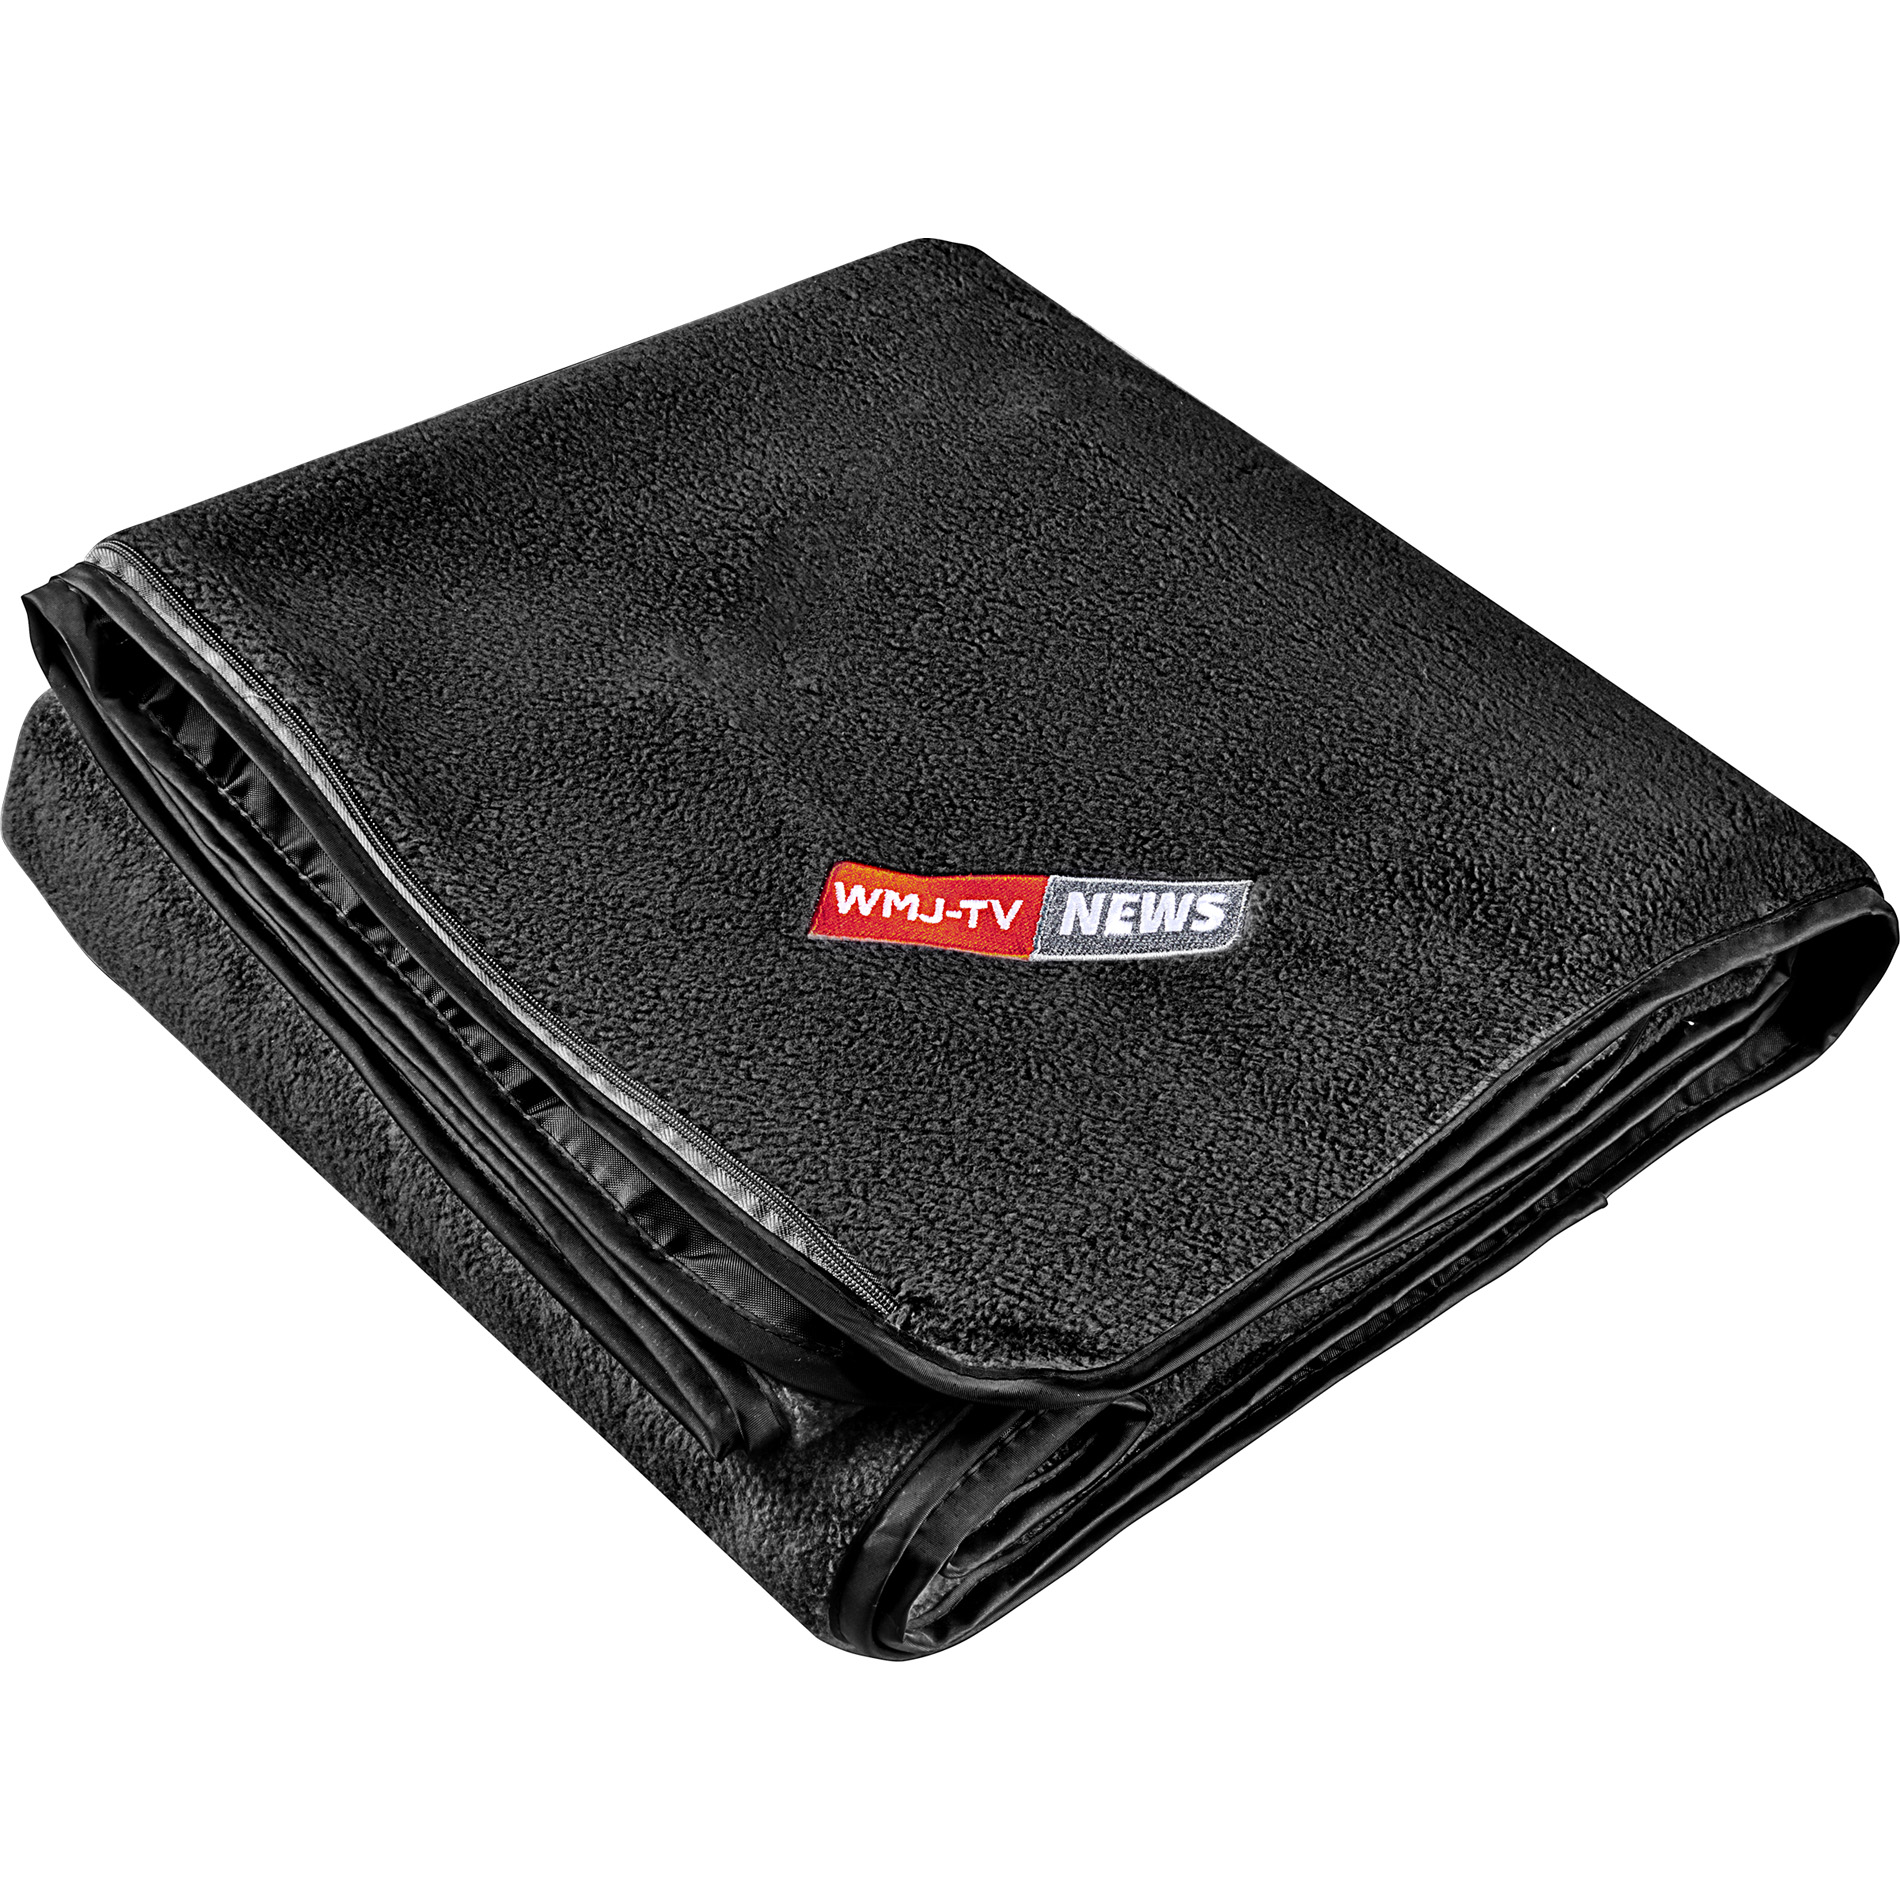 LEEDS 1081-39 - Oversized Waterproof Outdoor Blanket with Pouch